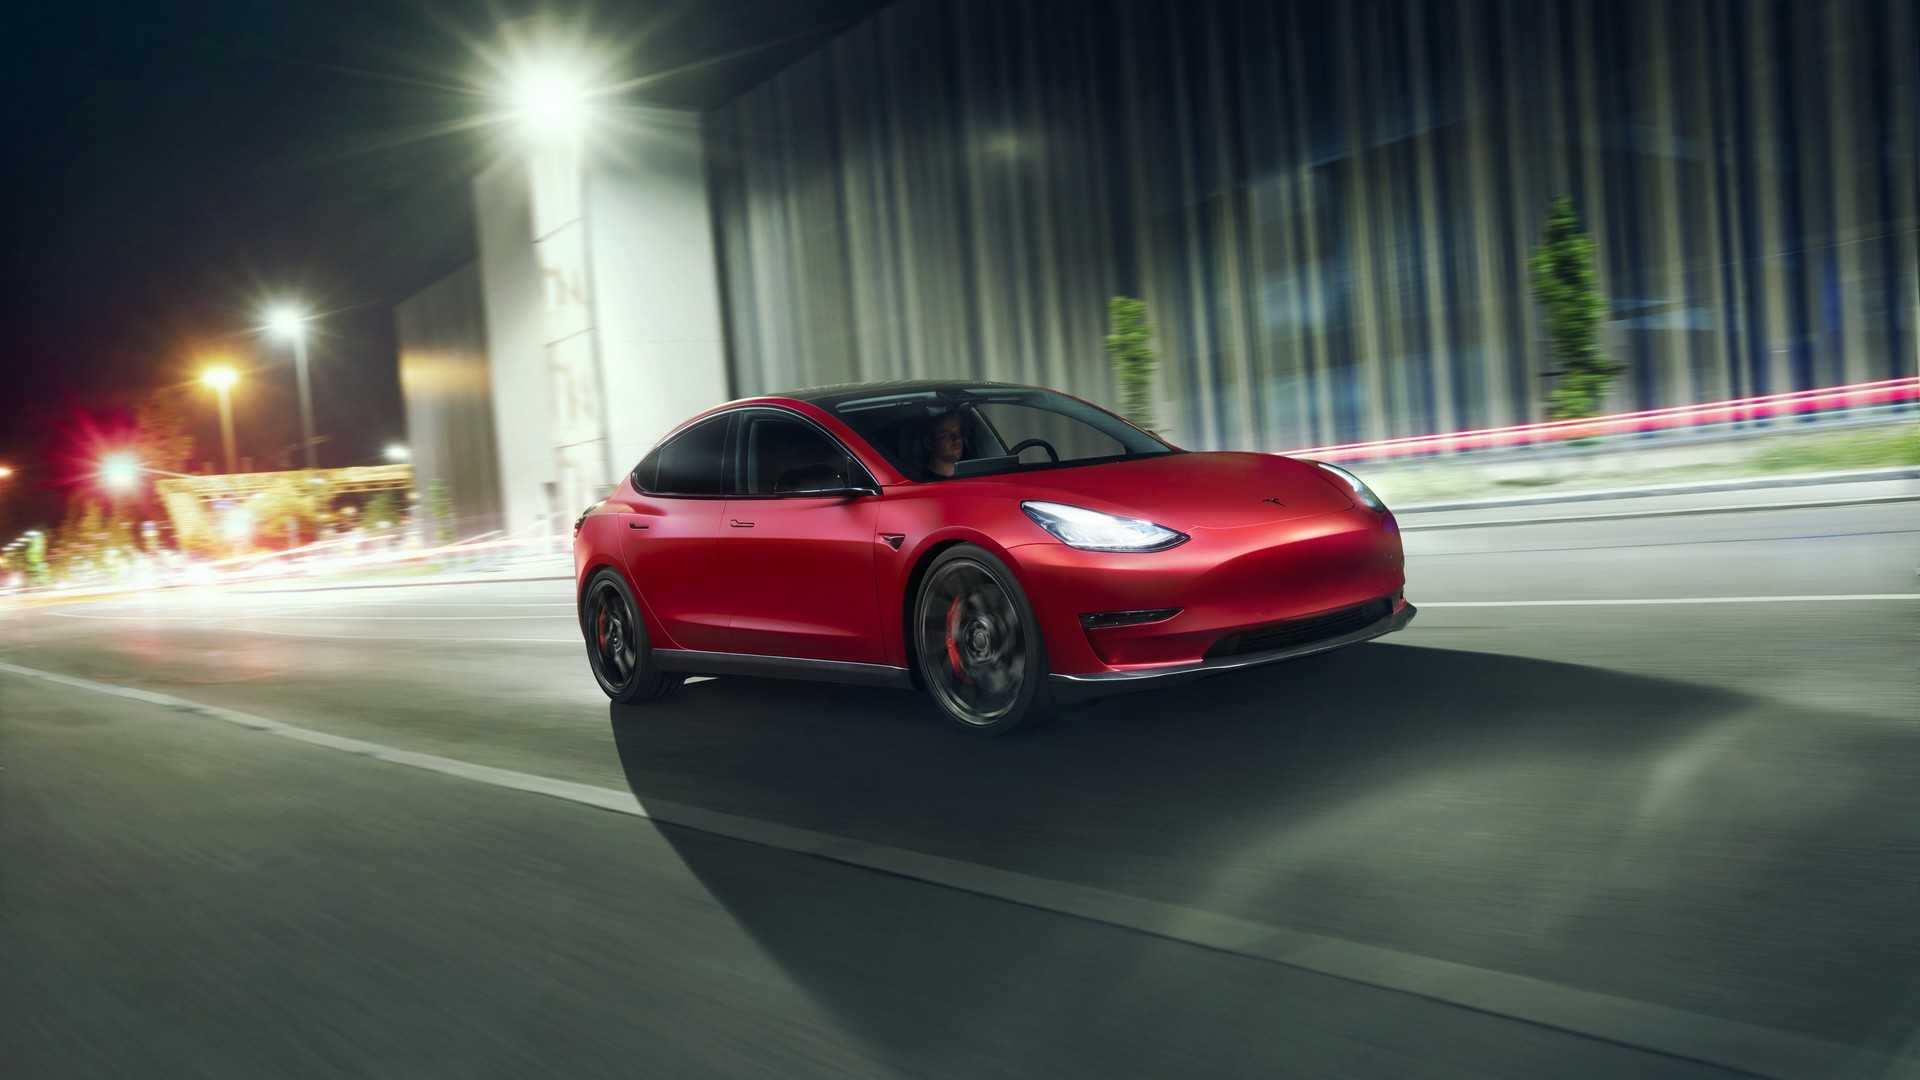 2019 Novitec Tesla Model 3 Electric Car Wallpapers Wallpaper Cave